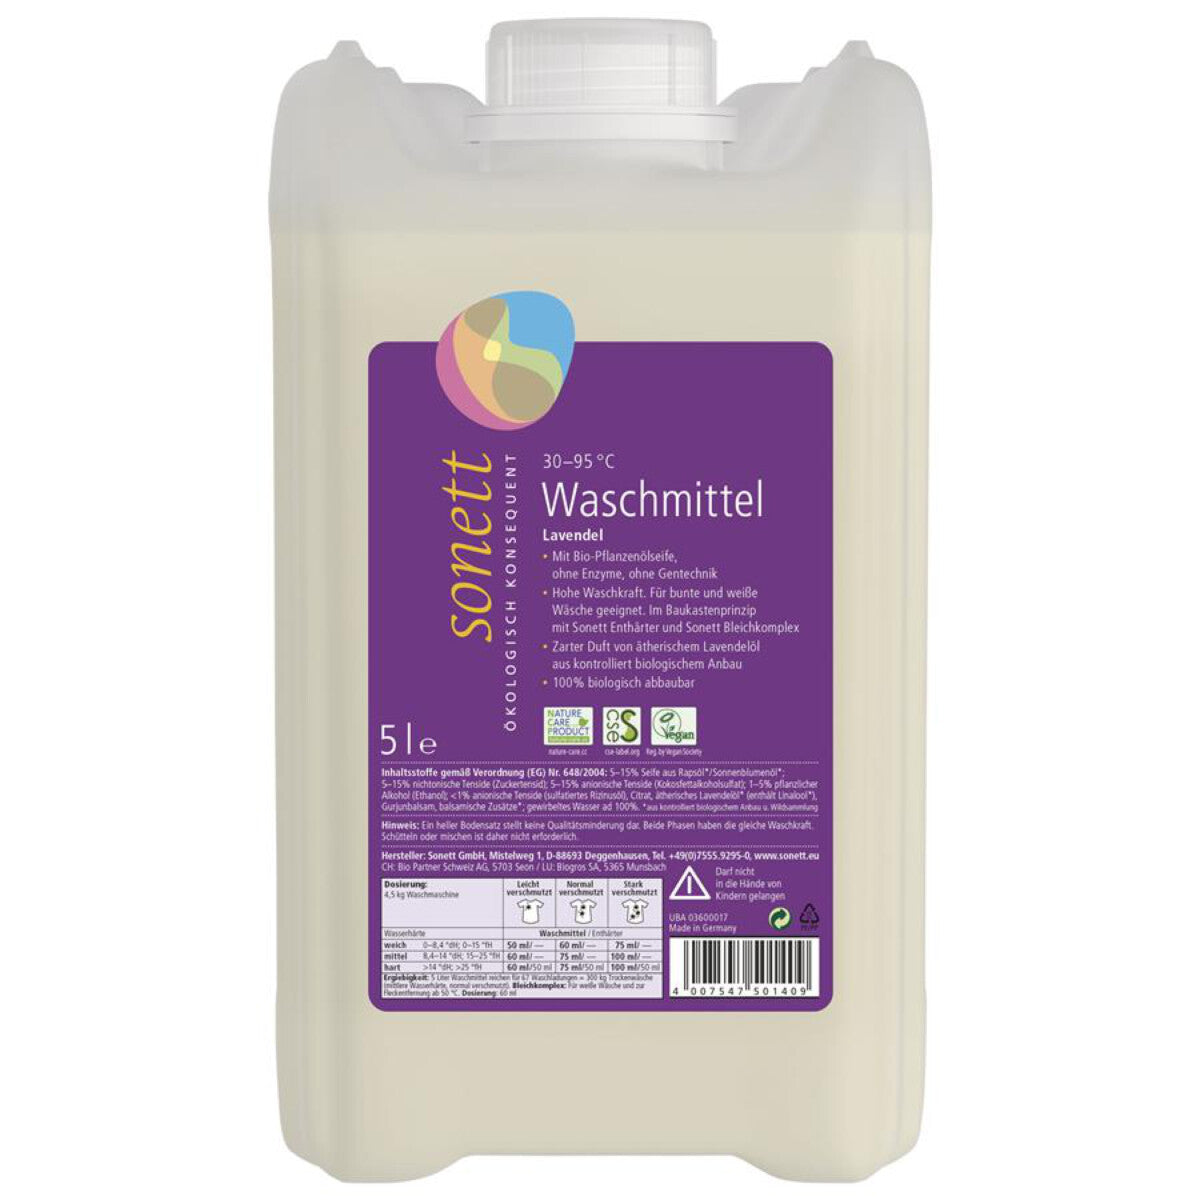 SONETT Waschmittel Lavendel - 5 l